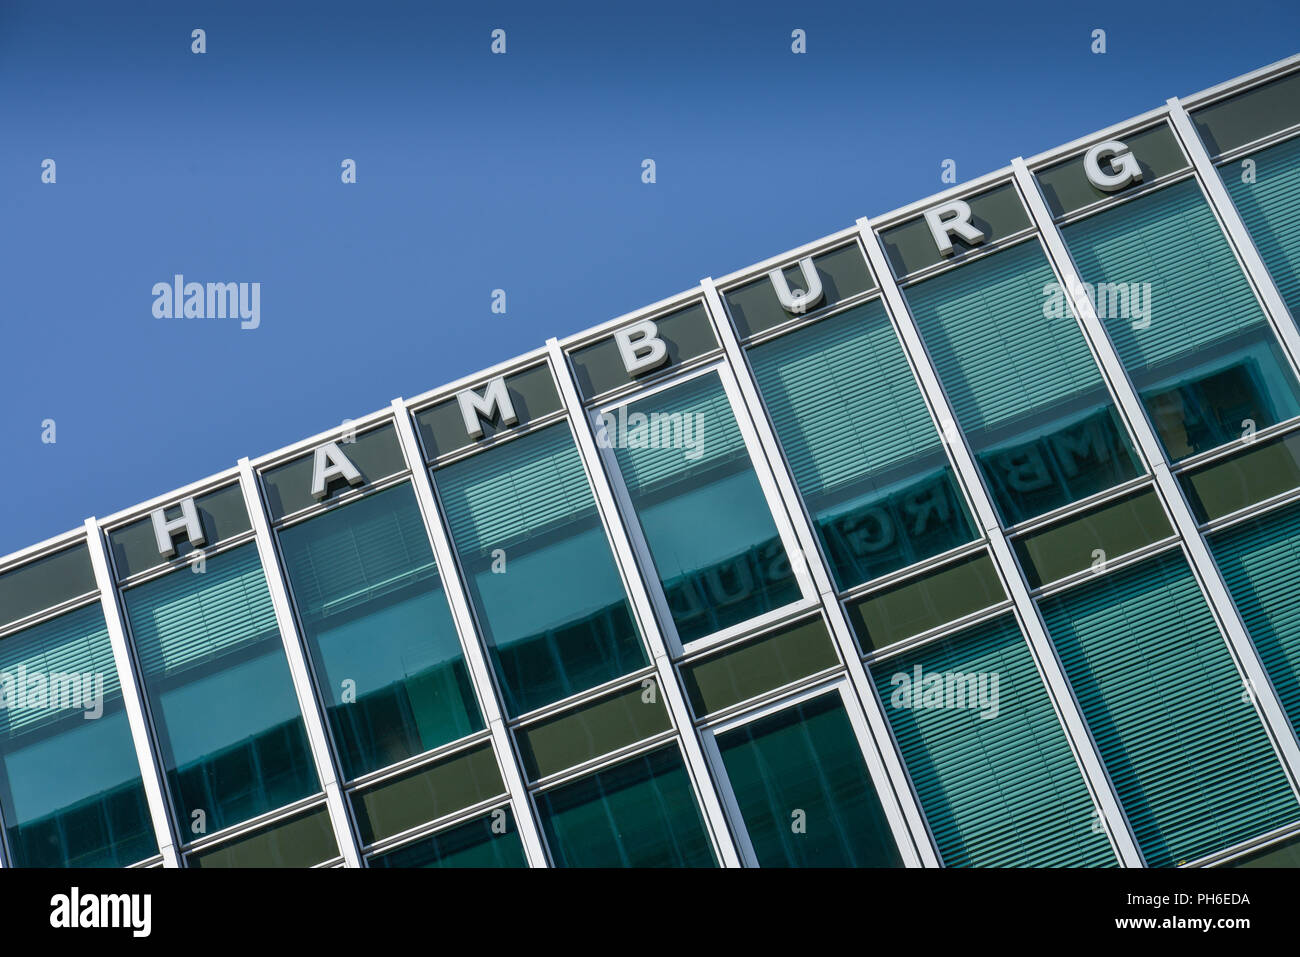 Reederei Hamburg Sued, Willy-Brandt-Strasse, Amburgo, Deutschland Foto Stock